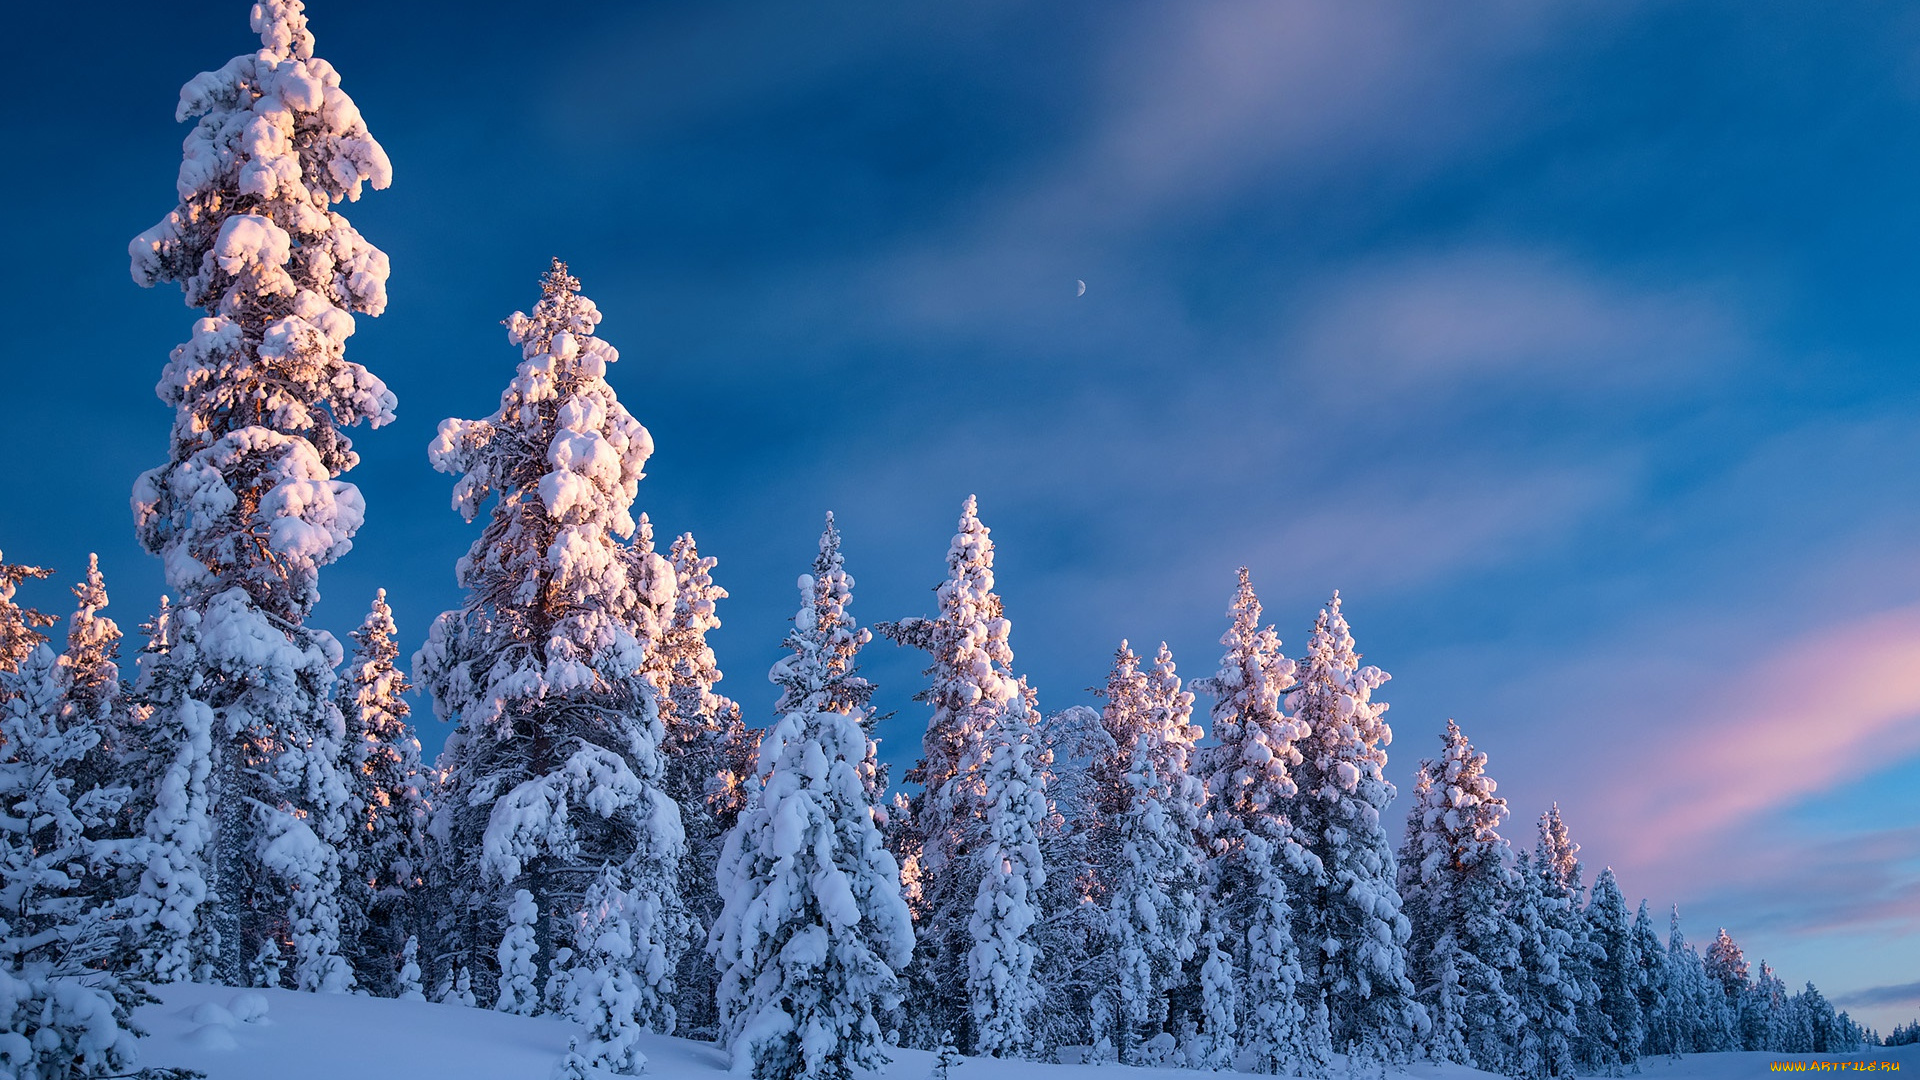 природа, зима, дорога, лес, небо, снег, деревья, ели, финляндия, finland, lapland, лапландия